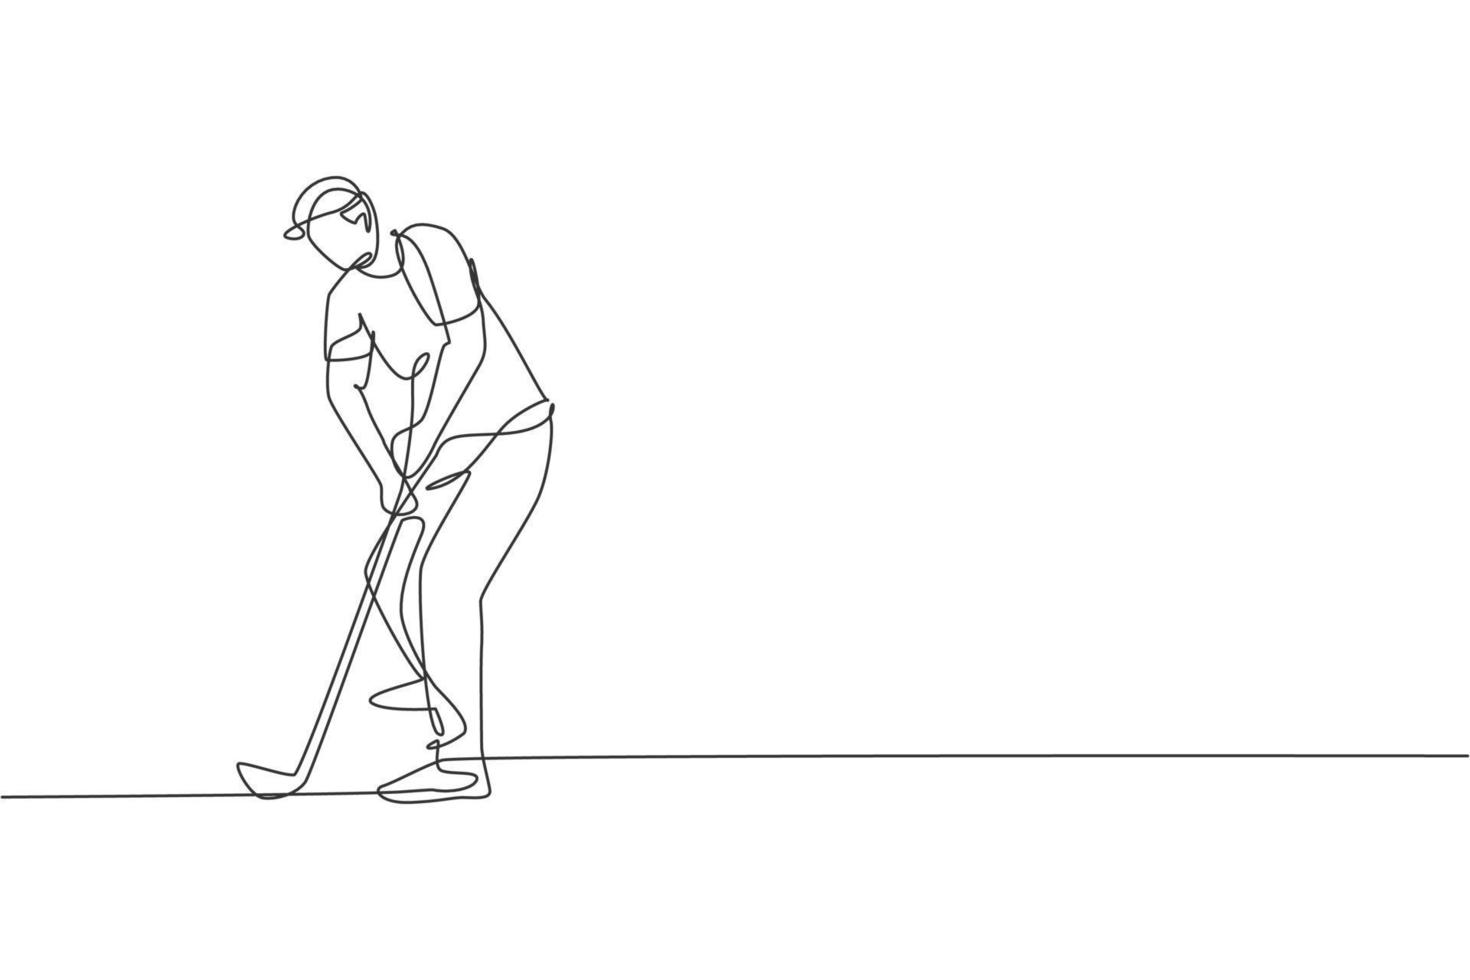 een doorlopende lijntekening van een jonge golfspeler die golfclub zwaait en de bal raakt. vrijetijdssport concept. dynamische enkele lijn tekenen grafisch ontwerp vectorillustratie voor toernooi promotie media vector